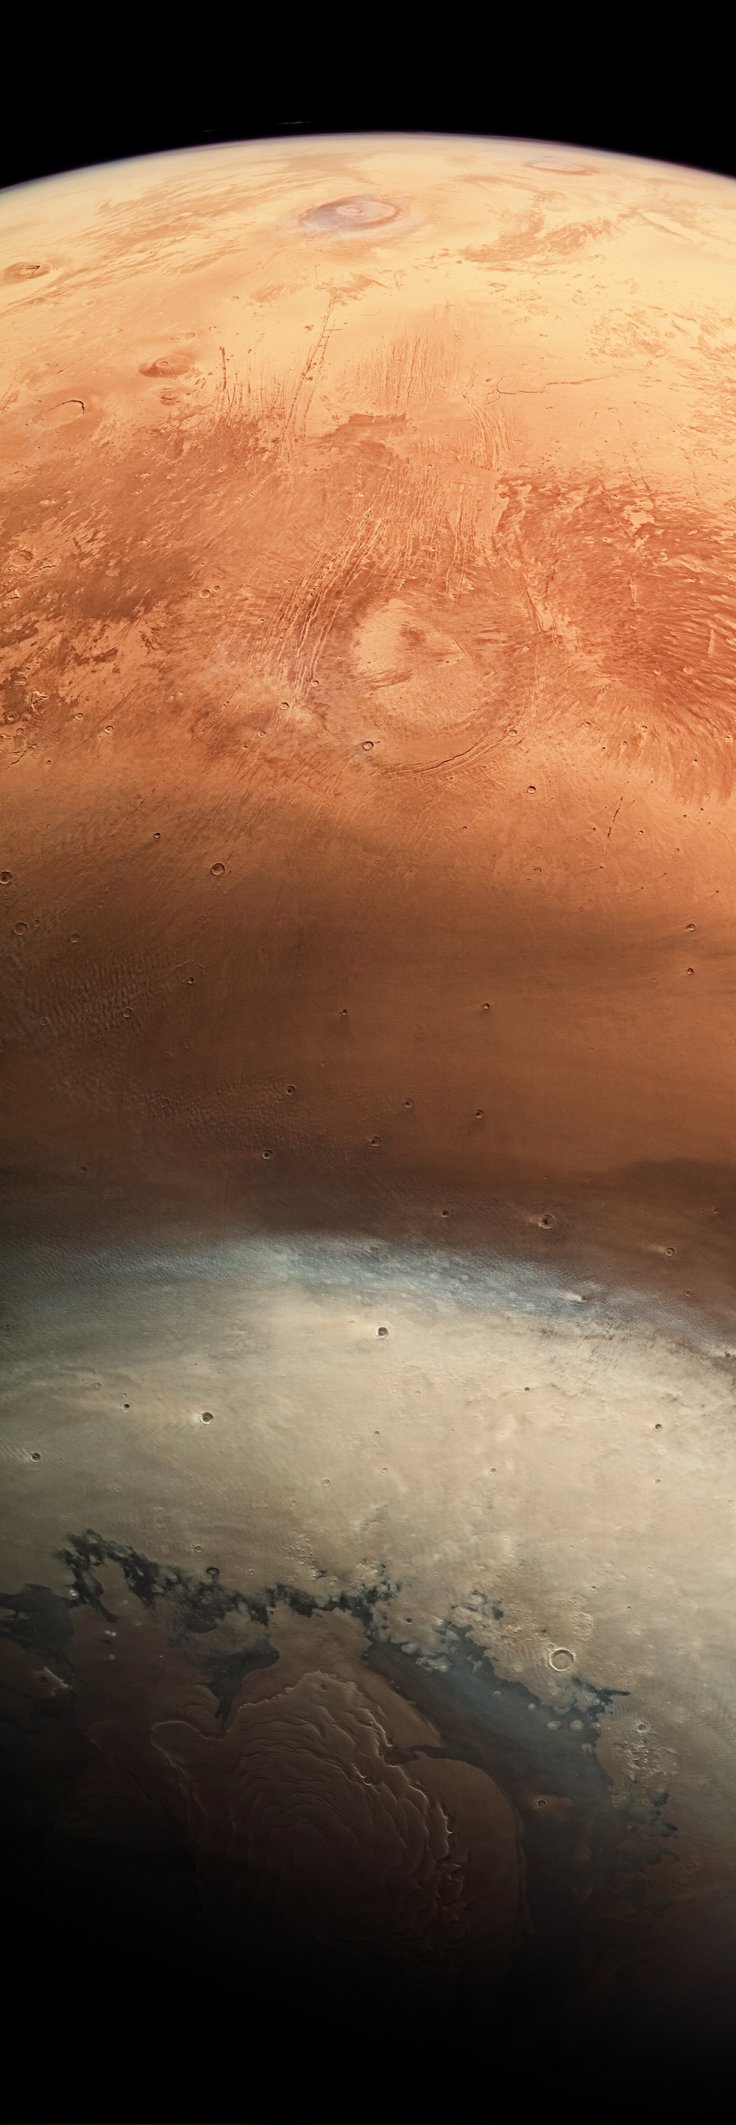 صورة المريخ